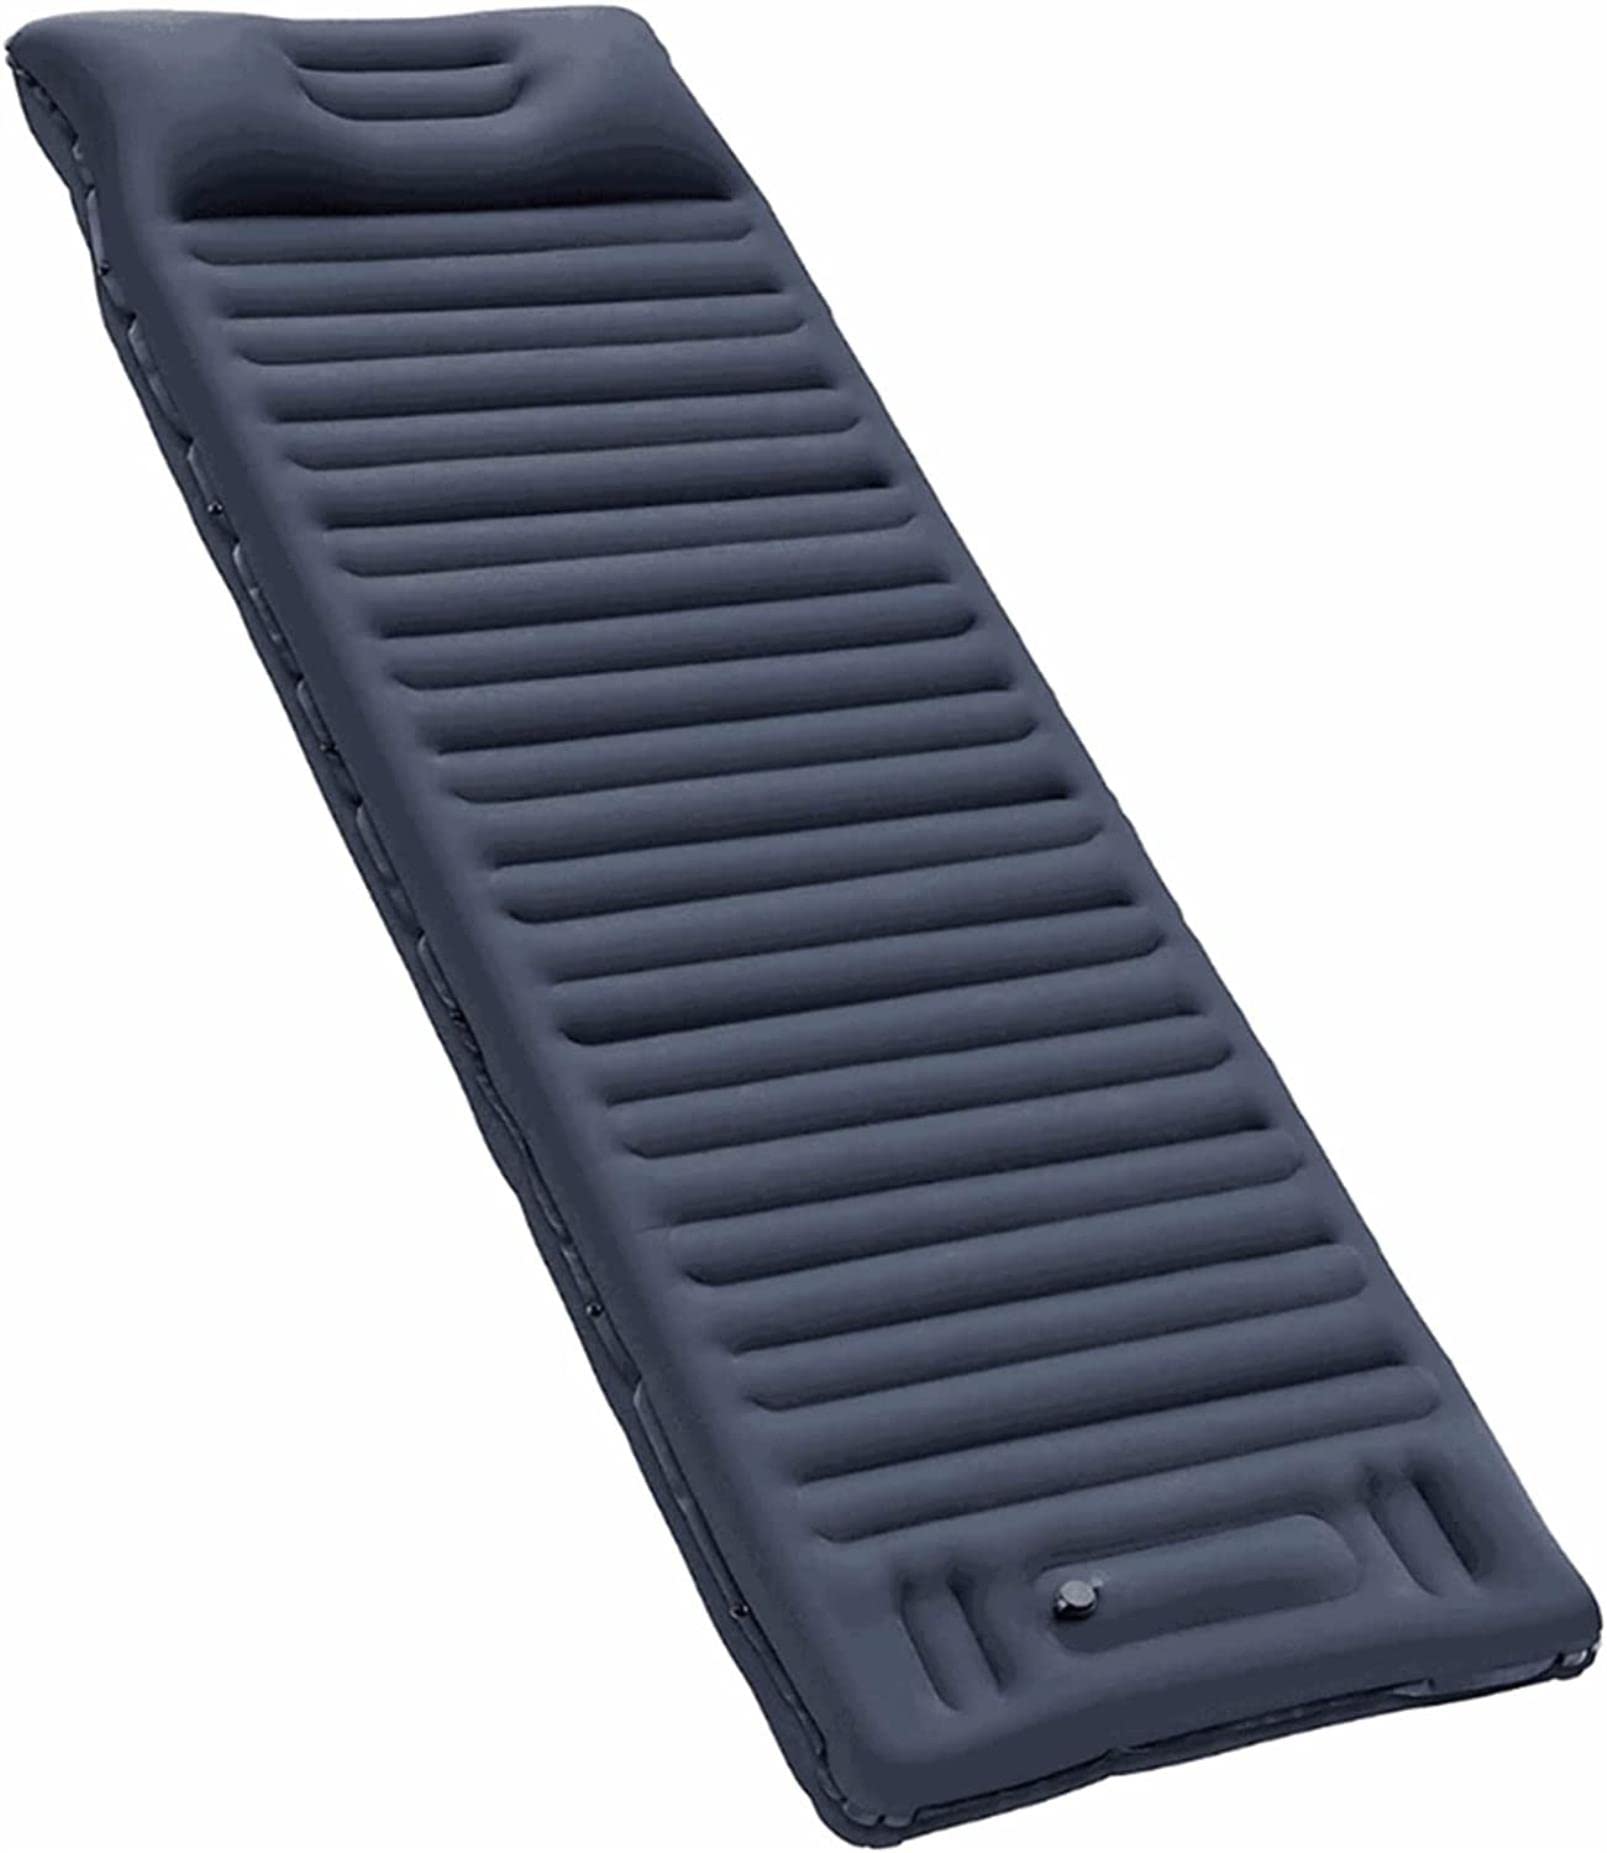 送料無料便利100 Camping Mat Inflatable Camping Mat Built-in Pump Pillow Ultralight Compact Camping Mattress Sleep